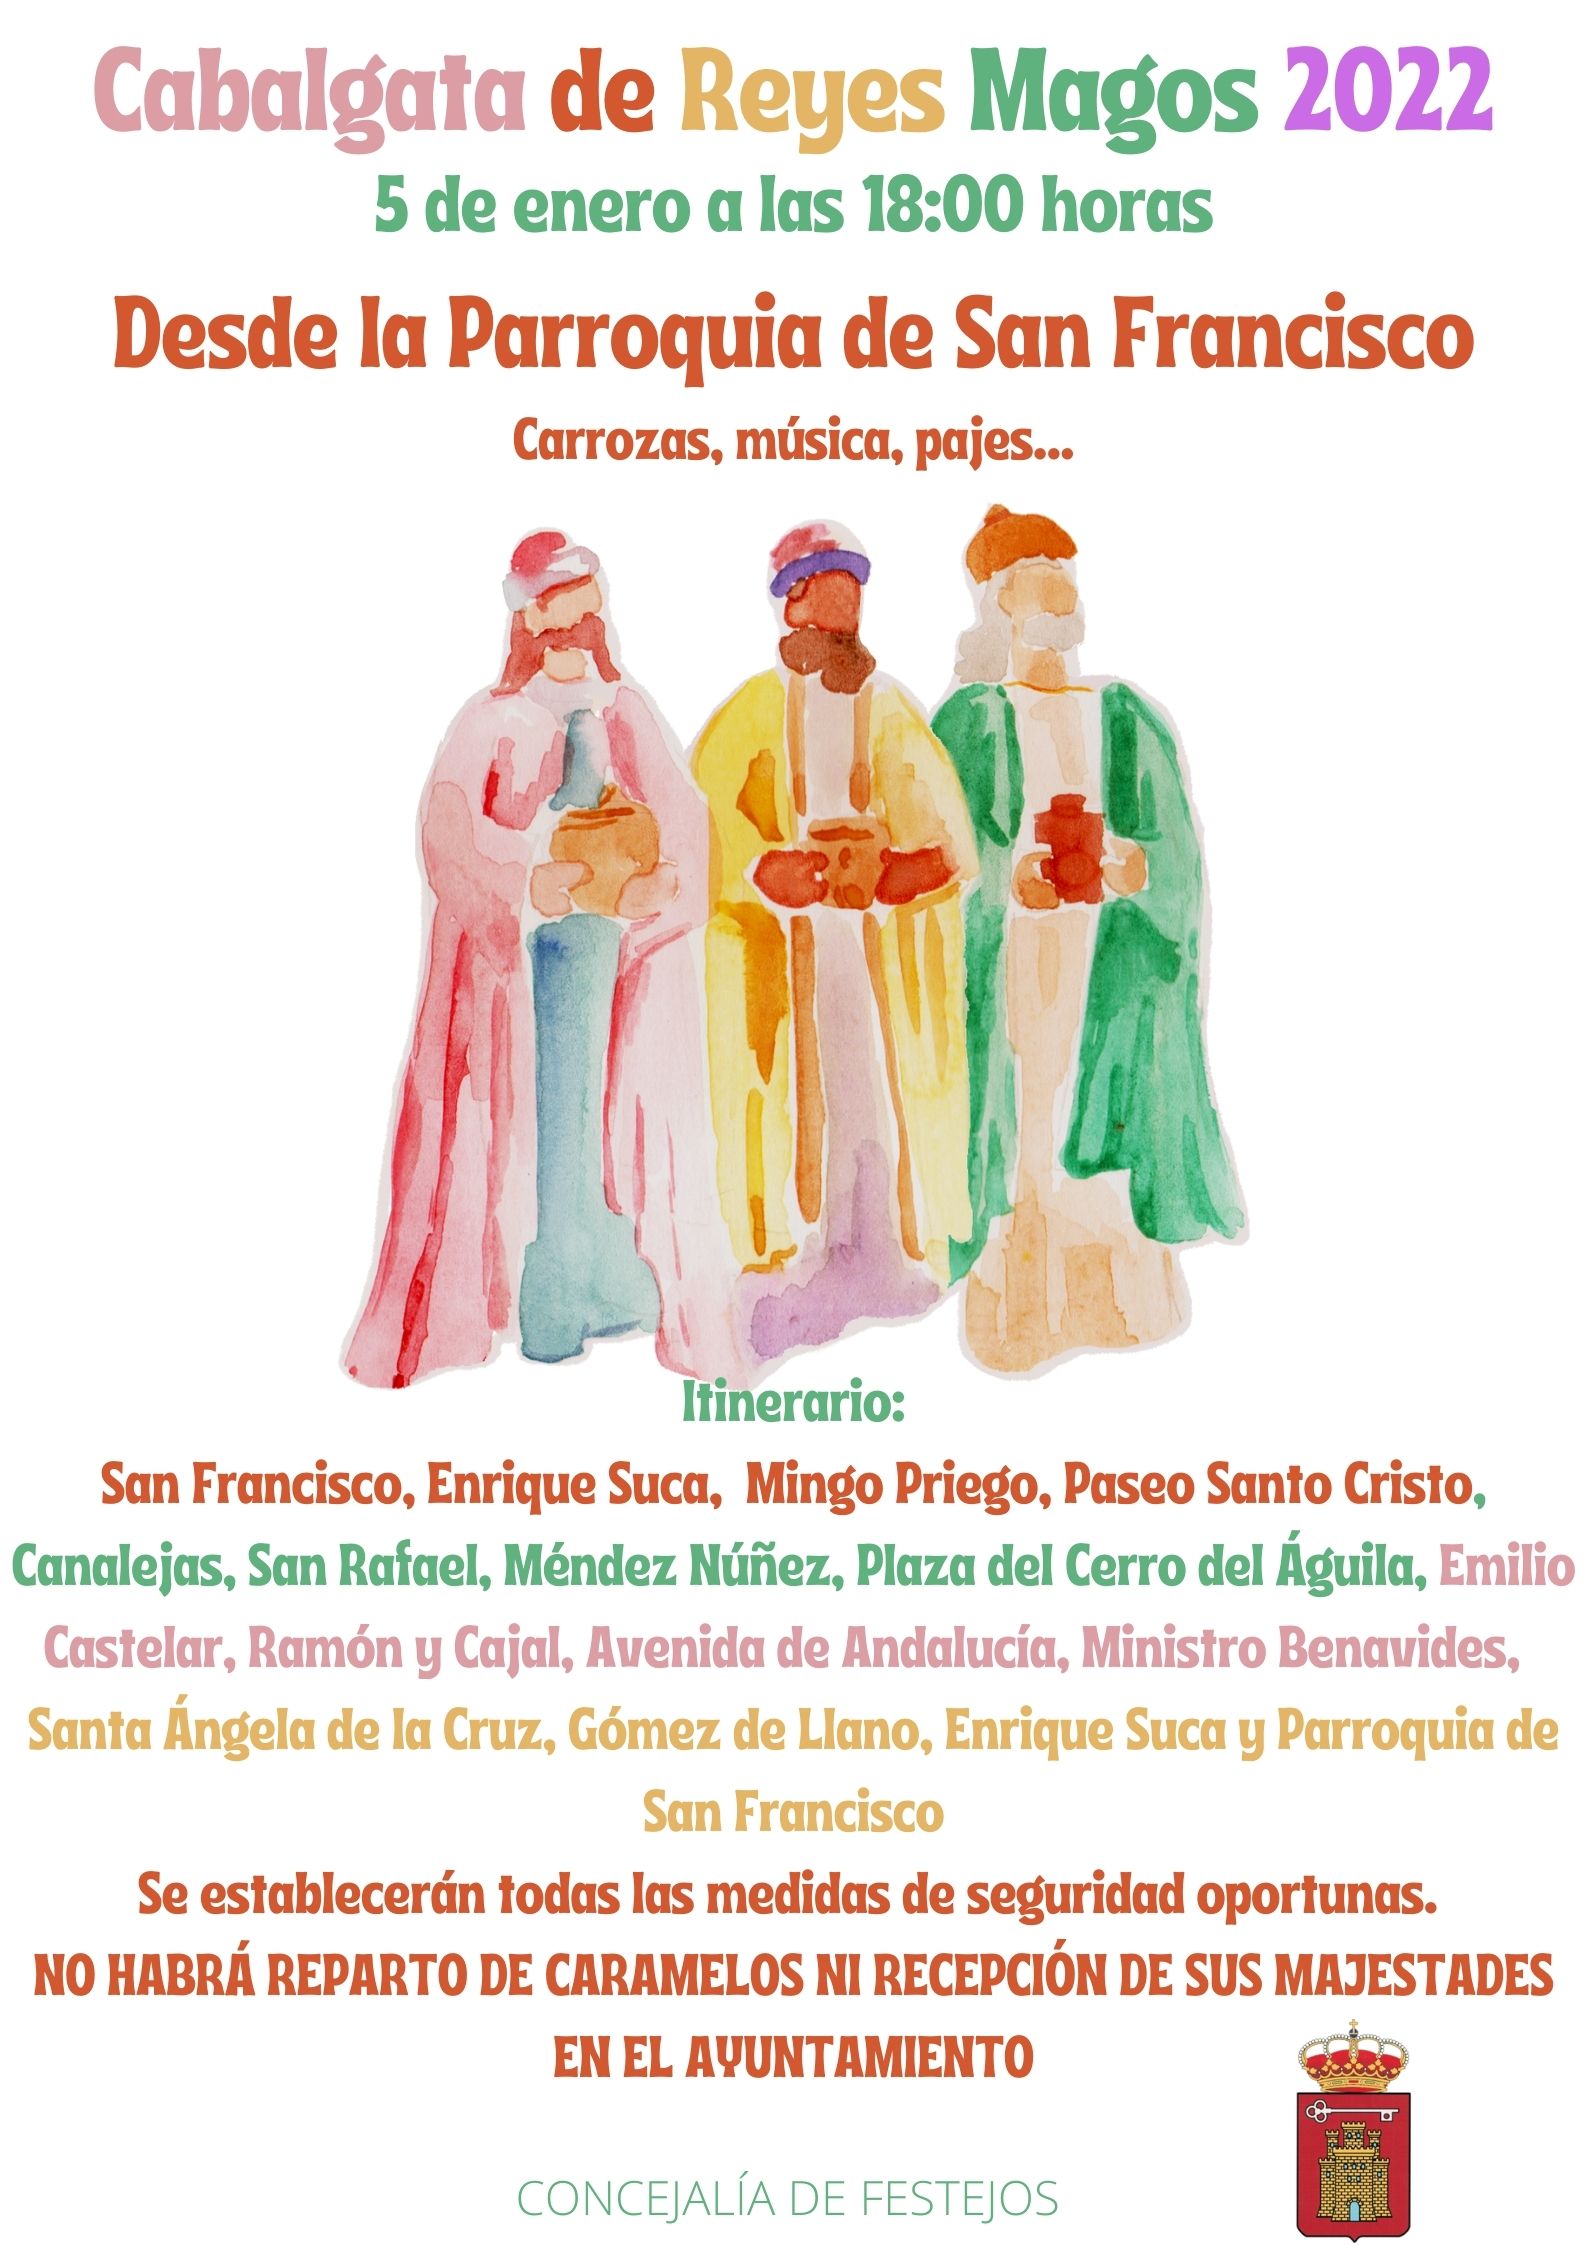 Cabalgata de Reyes Magos 2022. Detalles e itinerario